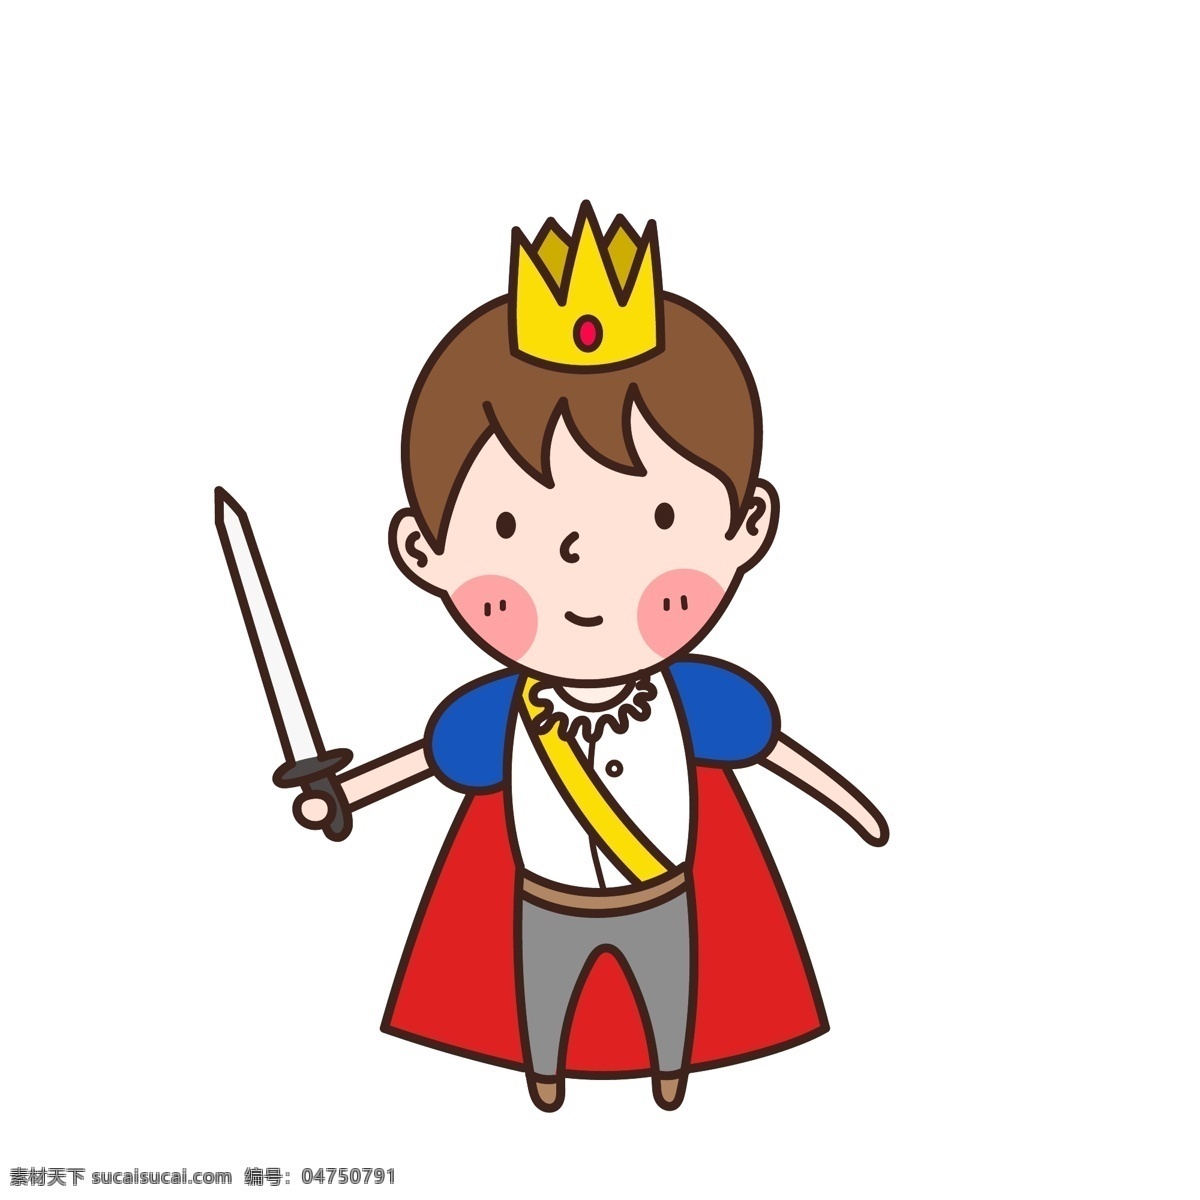 卡通 可爱 西方 王子 皇冠 宝剑